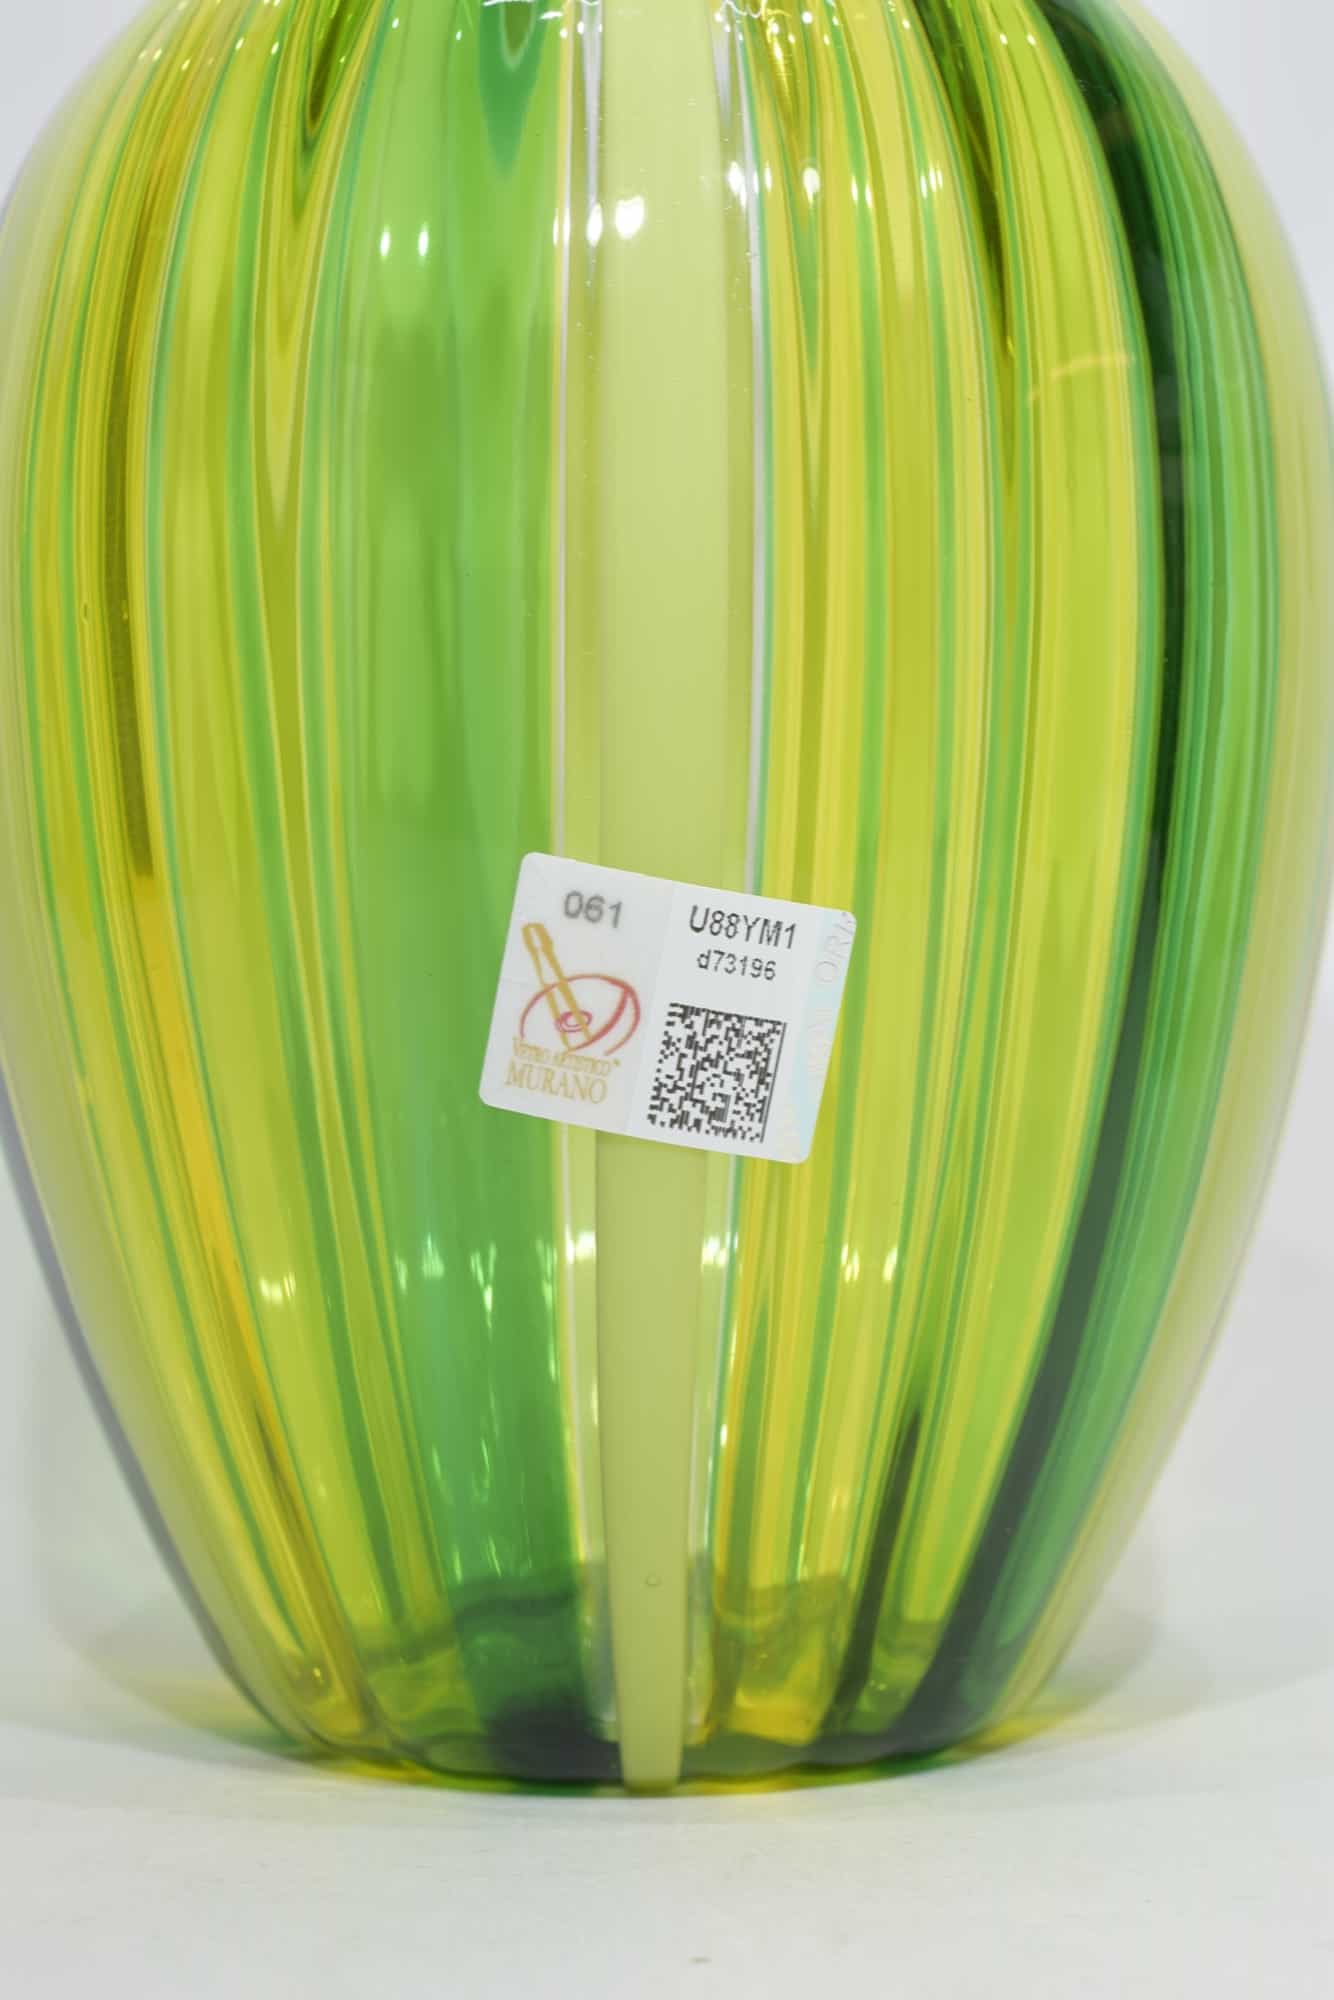 vaso-reeds-Murano-glass-10455